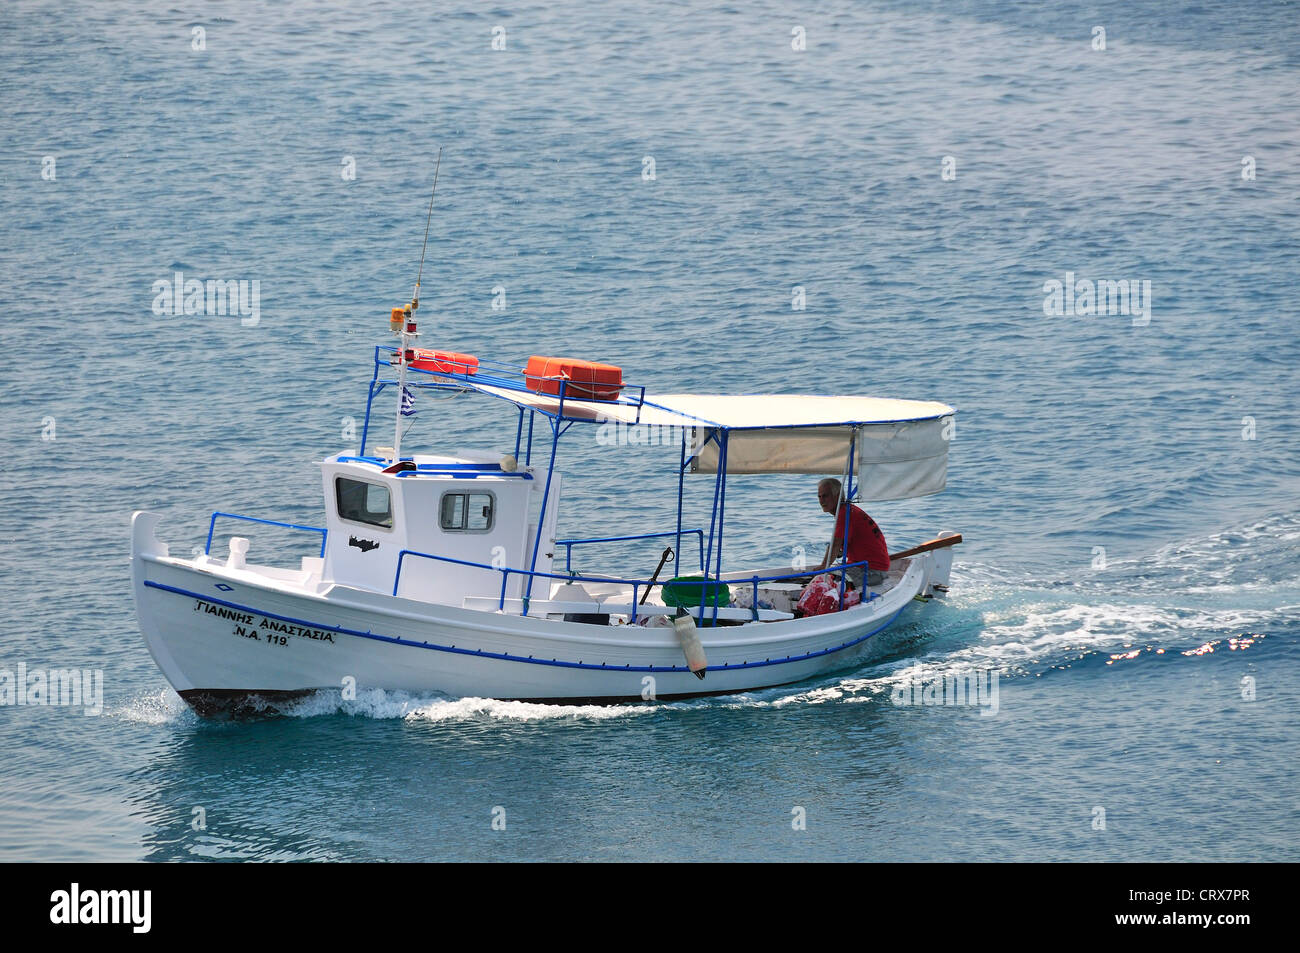 Kleine weiße Caique oder Fischerboot, die Rückkehr in den Hafen auf der Insel Ägina, Saronischen Golf, Griechenland Stockfoto